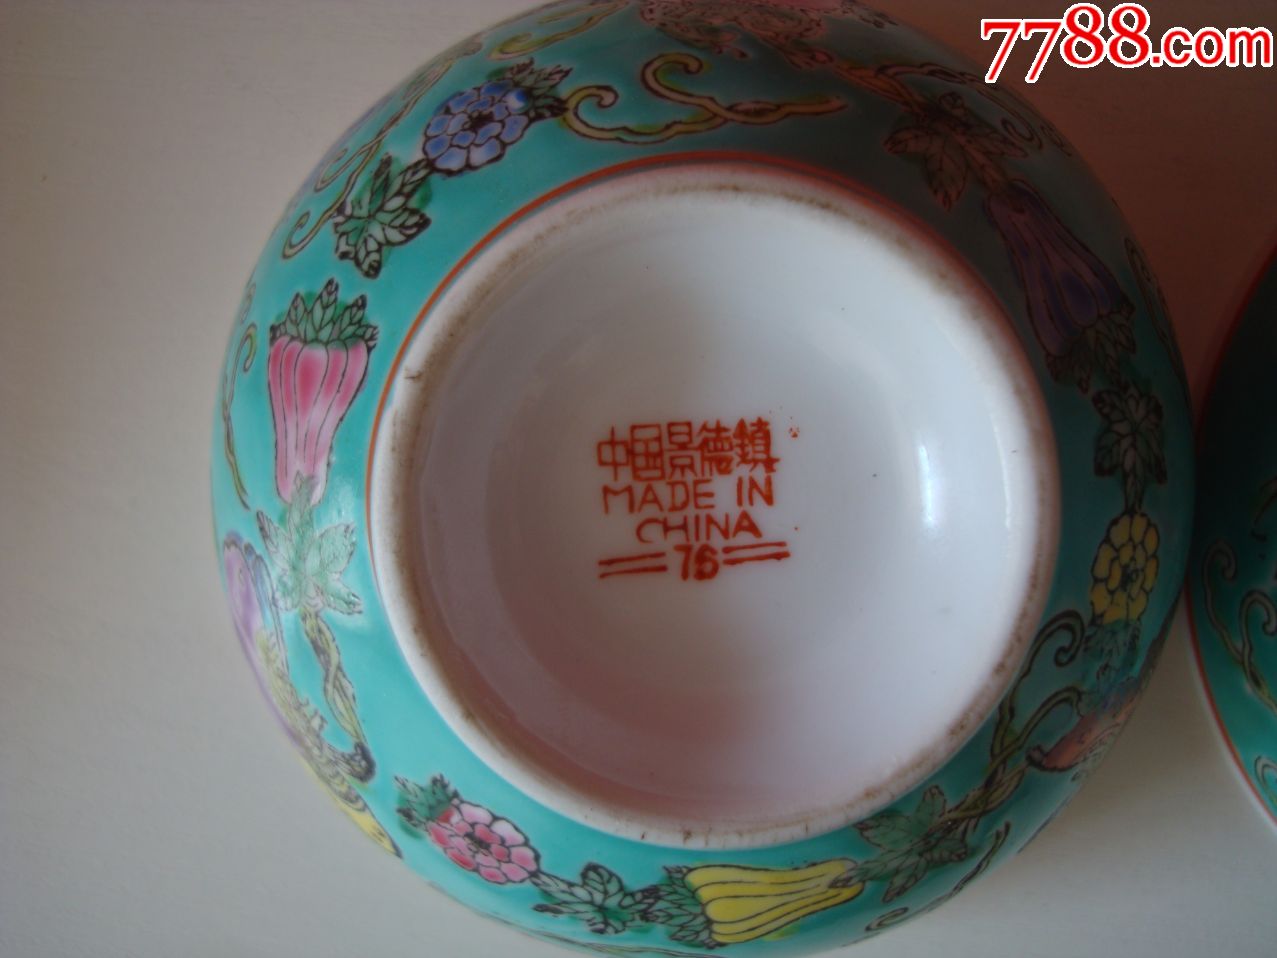 中国景德镇――手绘松石绿釉粉彩碗――4个碗合售